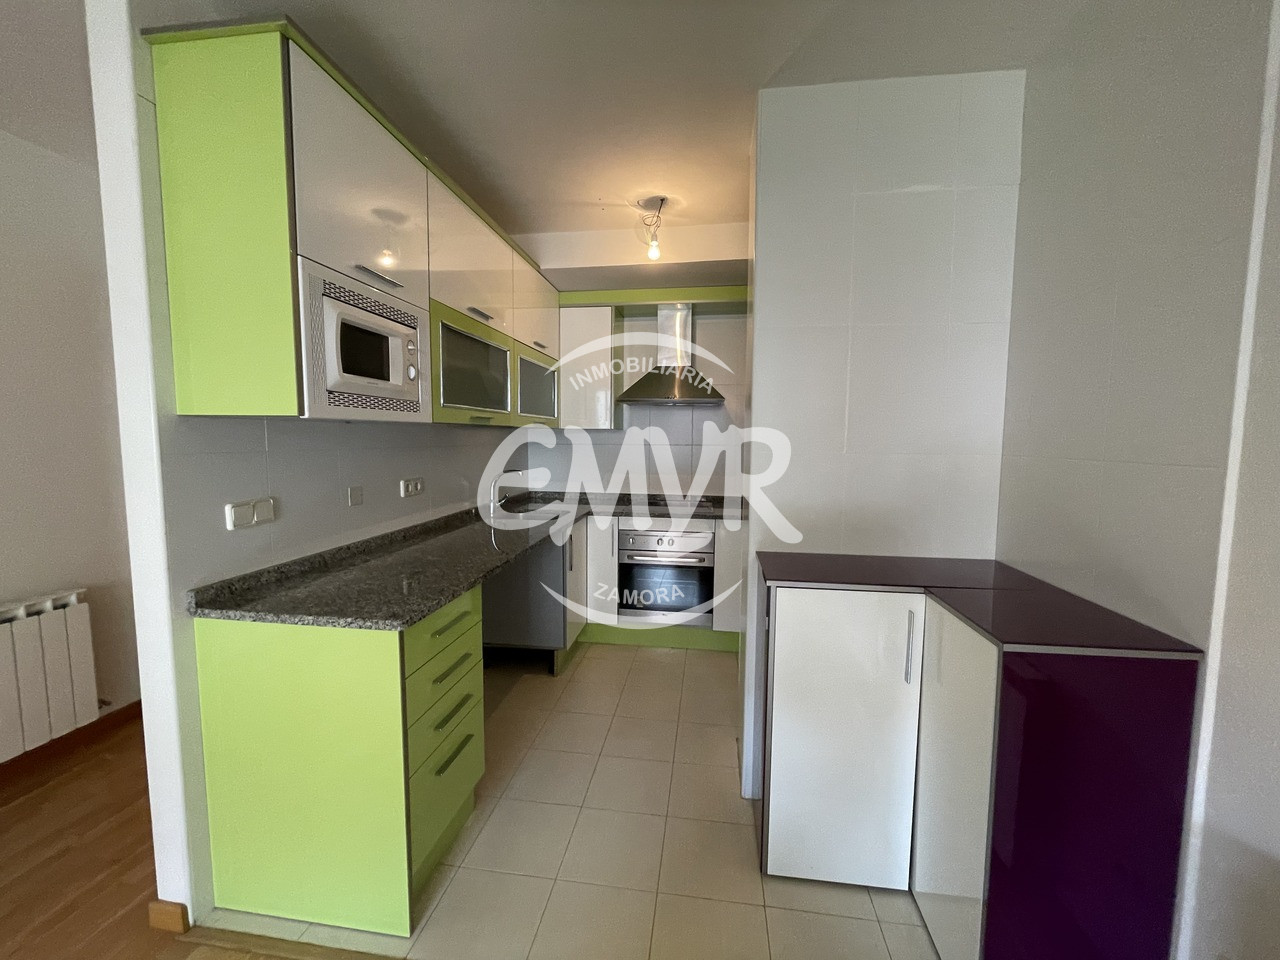 Venta y alquiler pisos en Zamora, inmobiliaria EMYR. Cocina en blanco y verde lima con campana extractora y horno en inox.